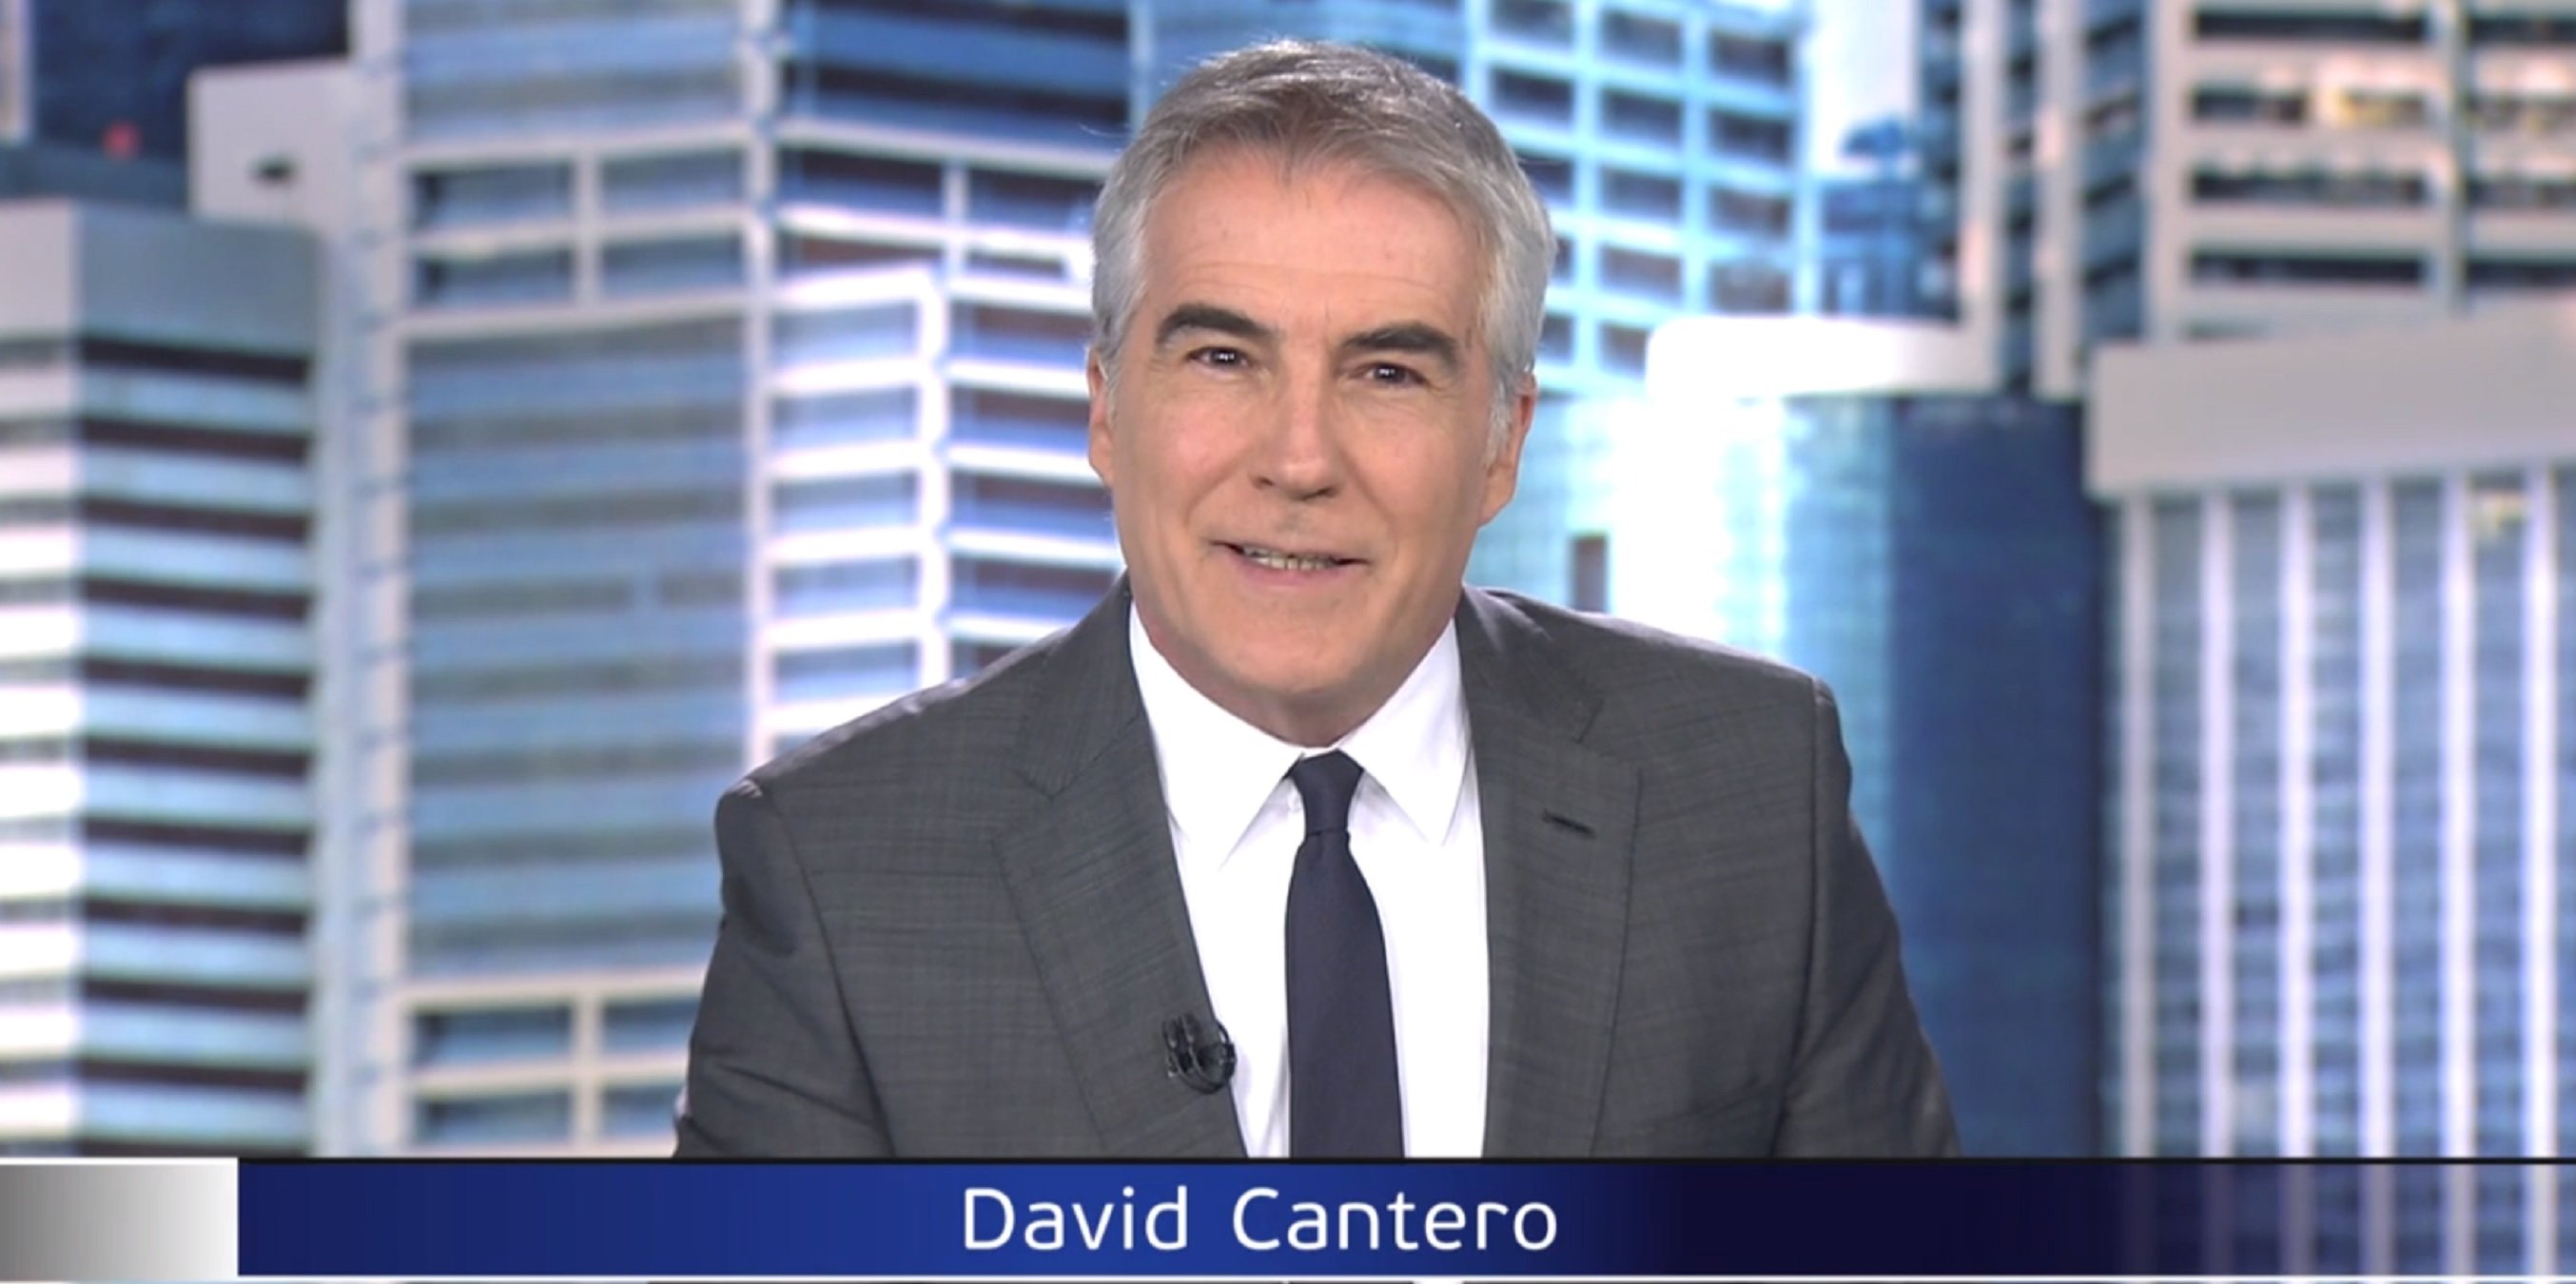 David Cantero té un fill seu a l'informatiu: reporter sexy i cognom de la mare